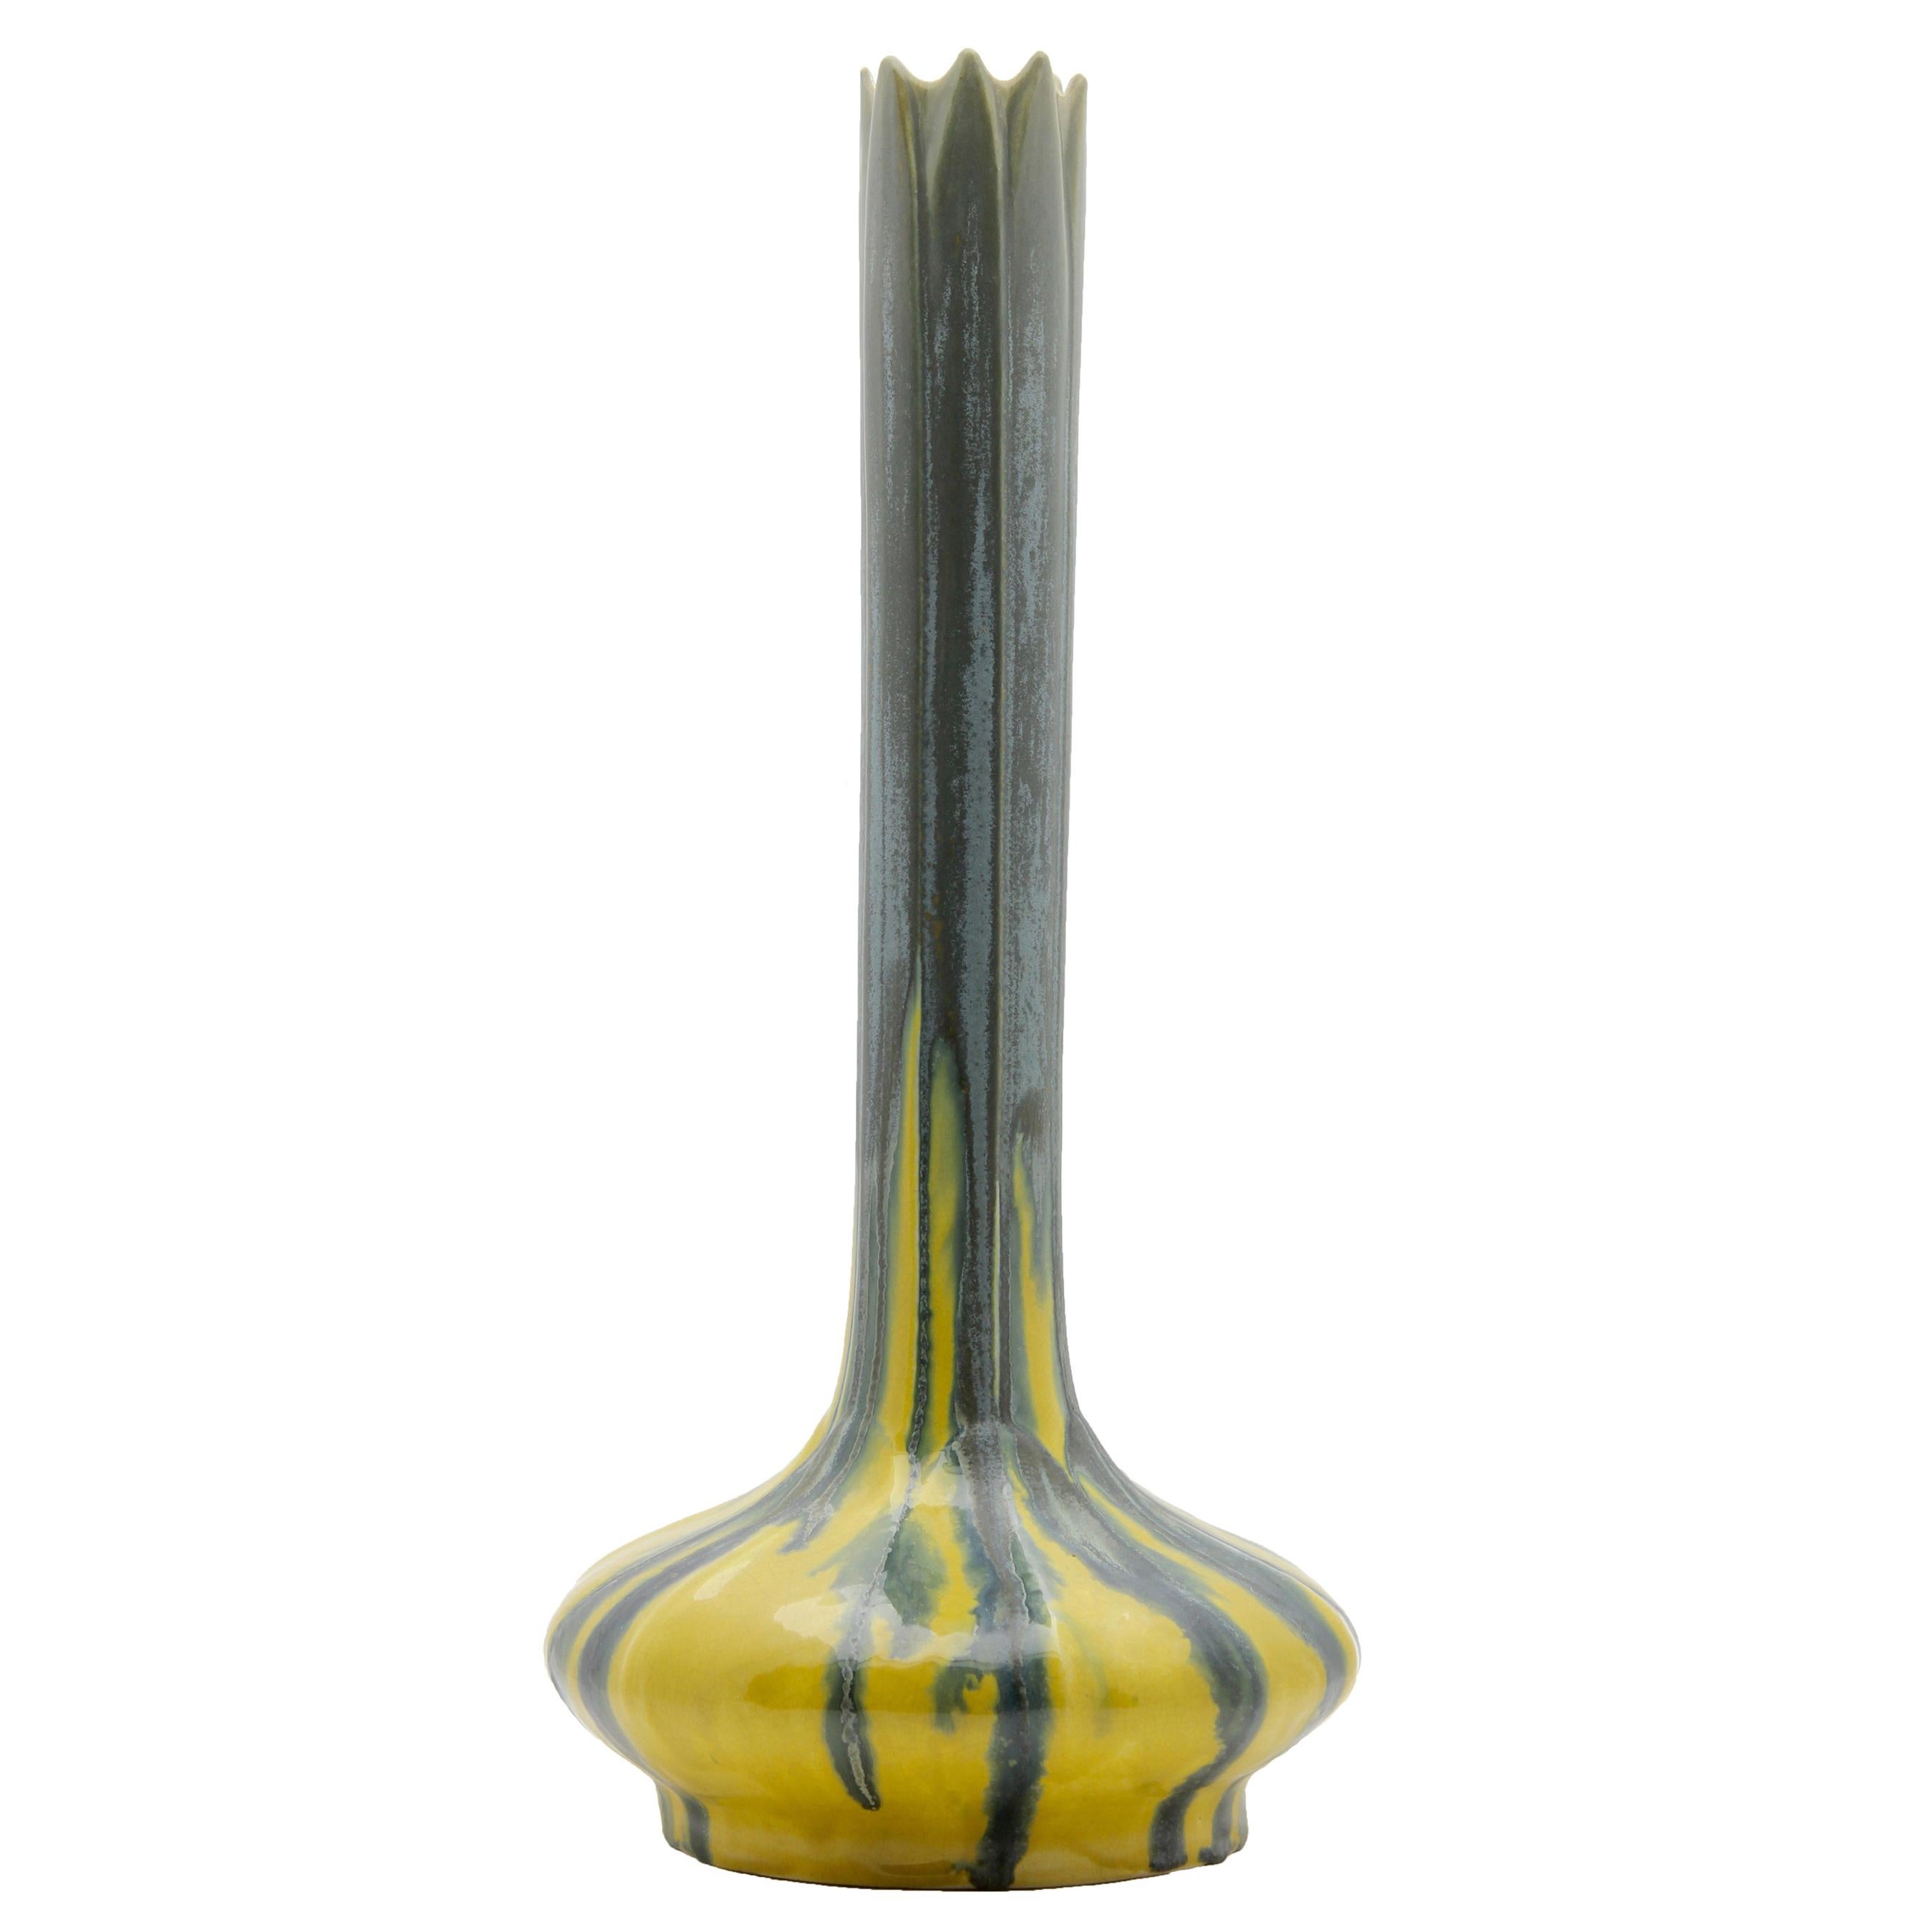 Art Nouveau AMC, Wasmuel, Glazed Vase 'Soliflower' Made in Belgium